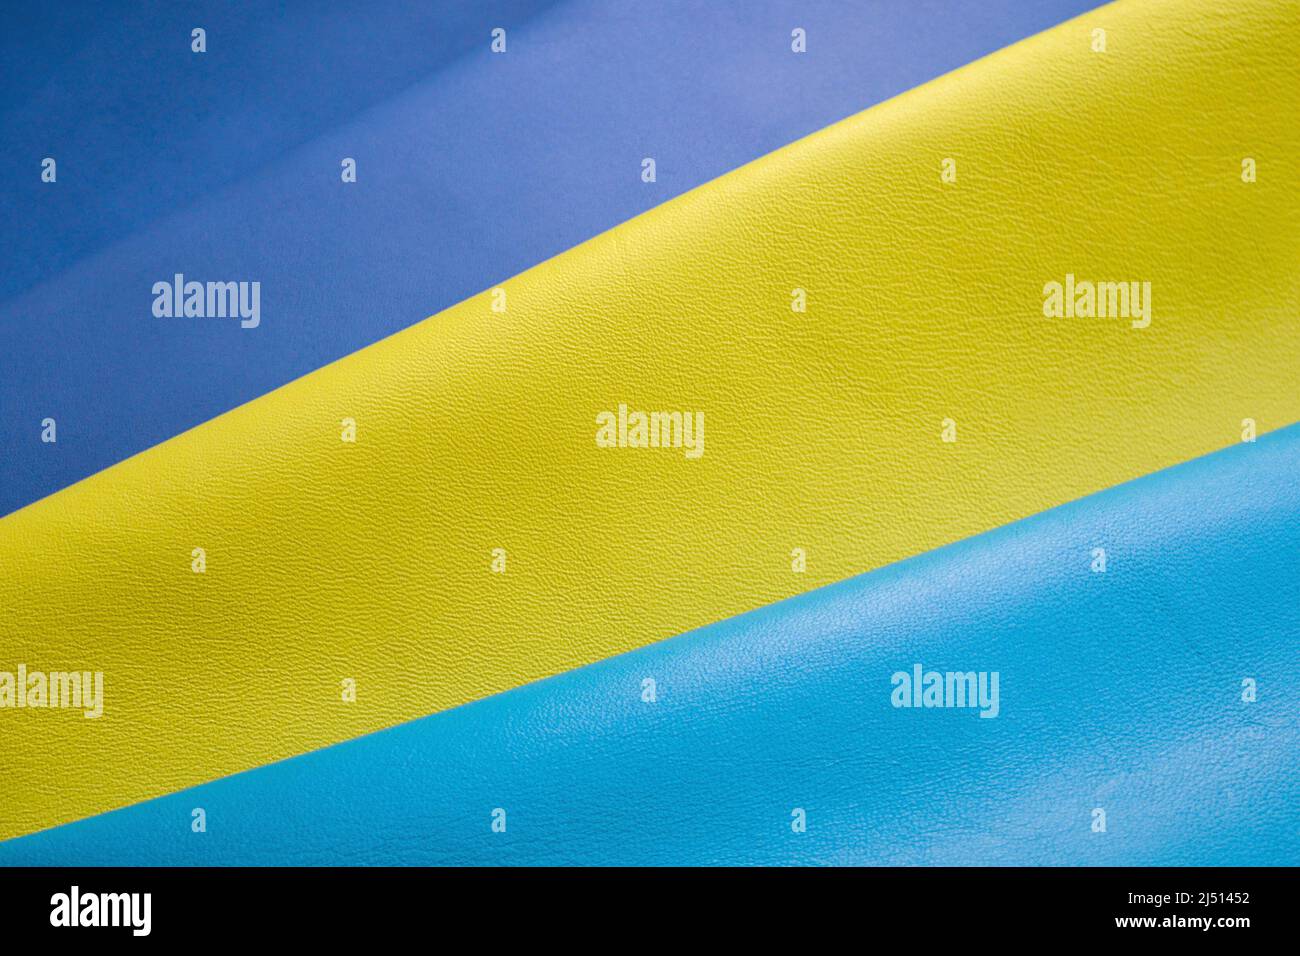 Primo piano di morbida nappa blu, gialla e blu chiaro. Foto Stock